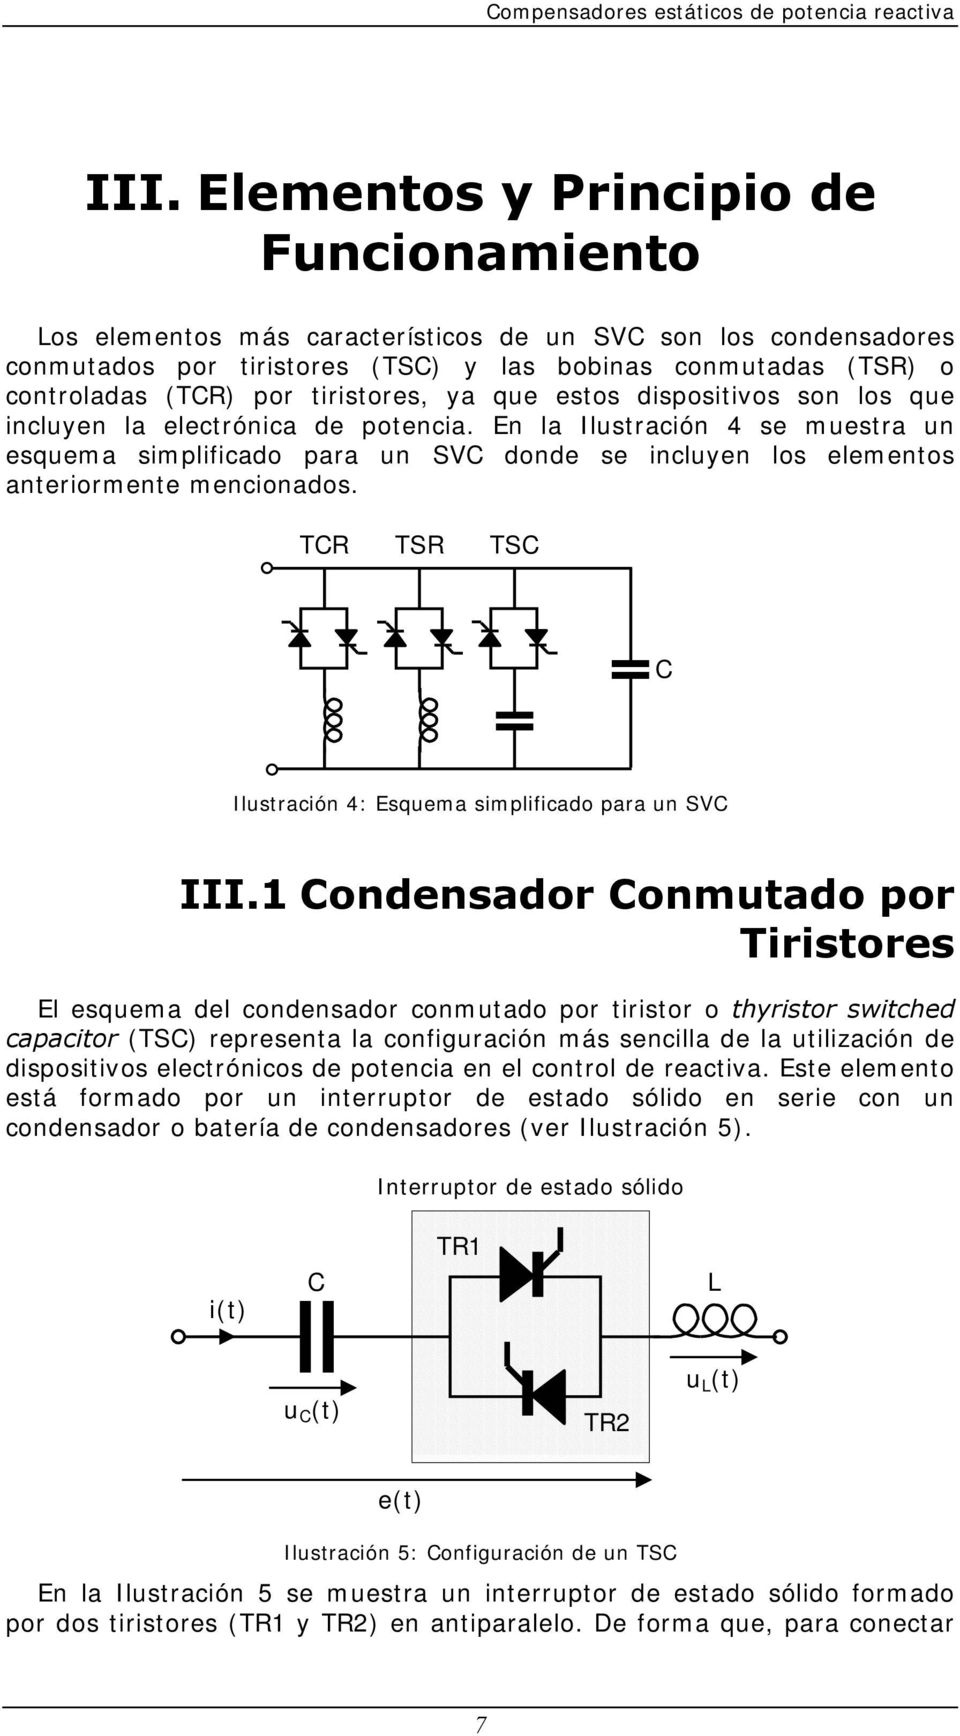 En la Ilustración 4 se muestra un esquema simplificado para un SVC donde se incluyen los elementos anteriormente mencionados. TCR TSR TSC C Ilustración 4: Esquema simplificado para un SVC III.